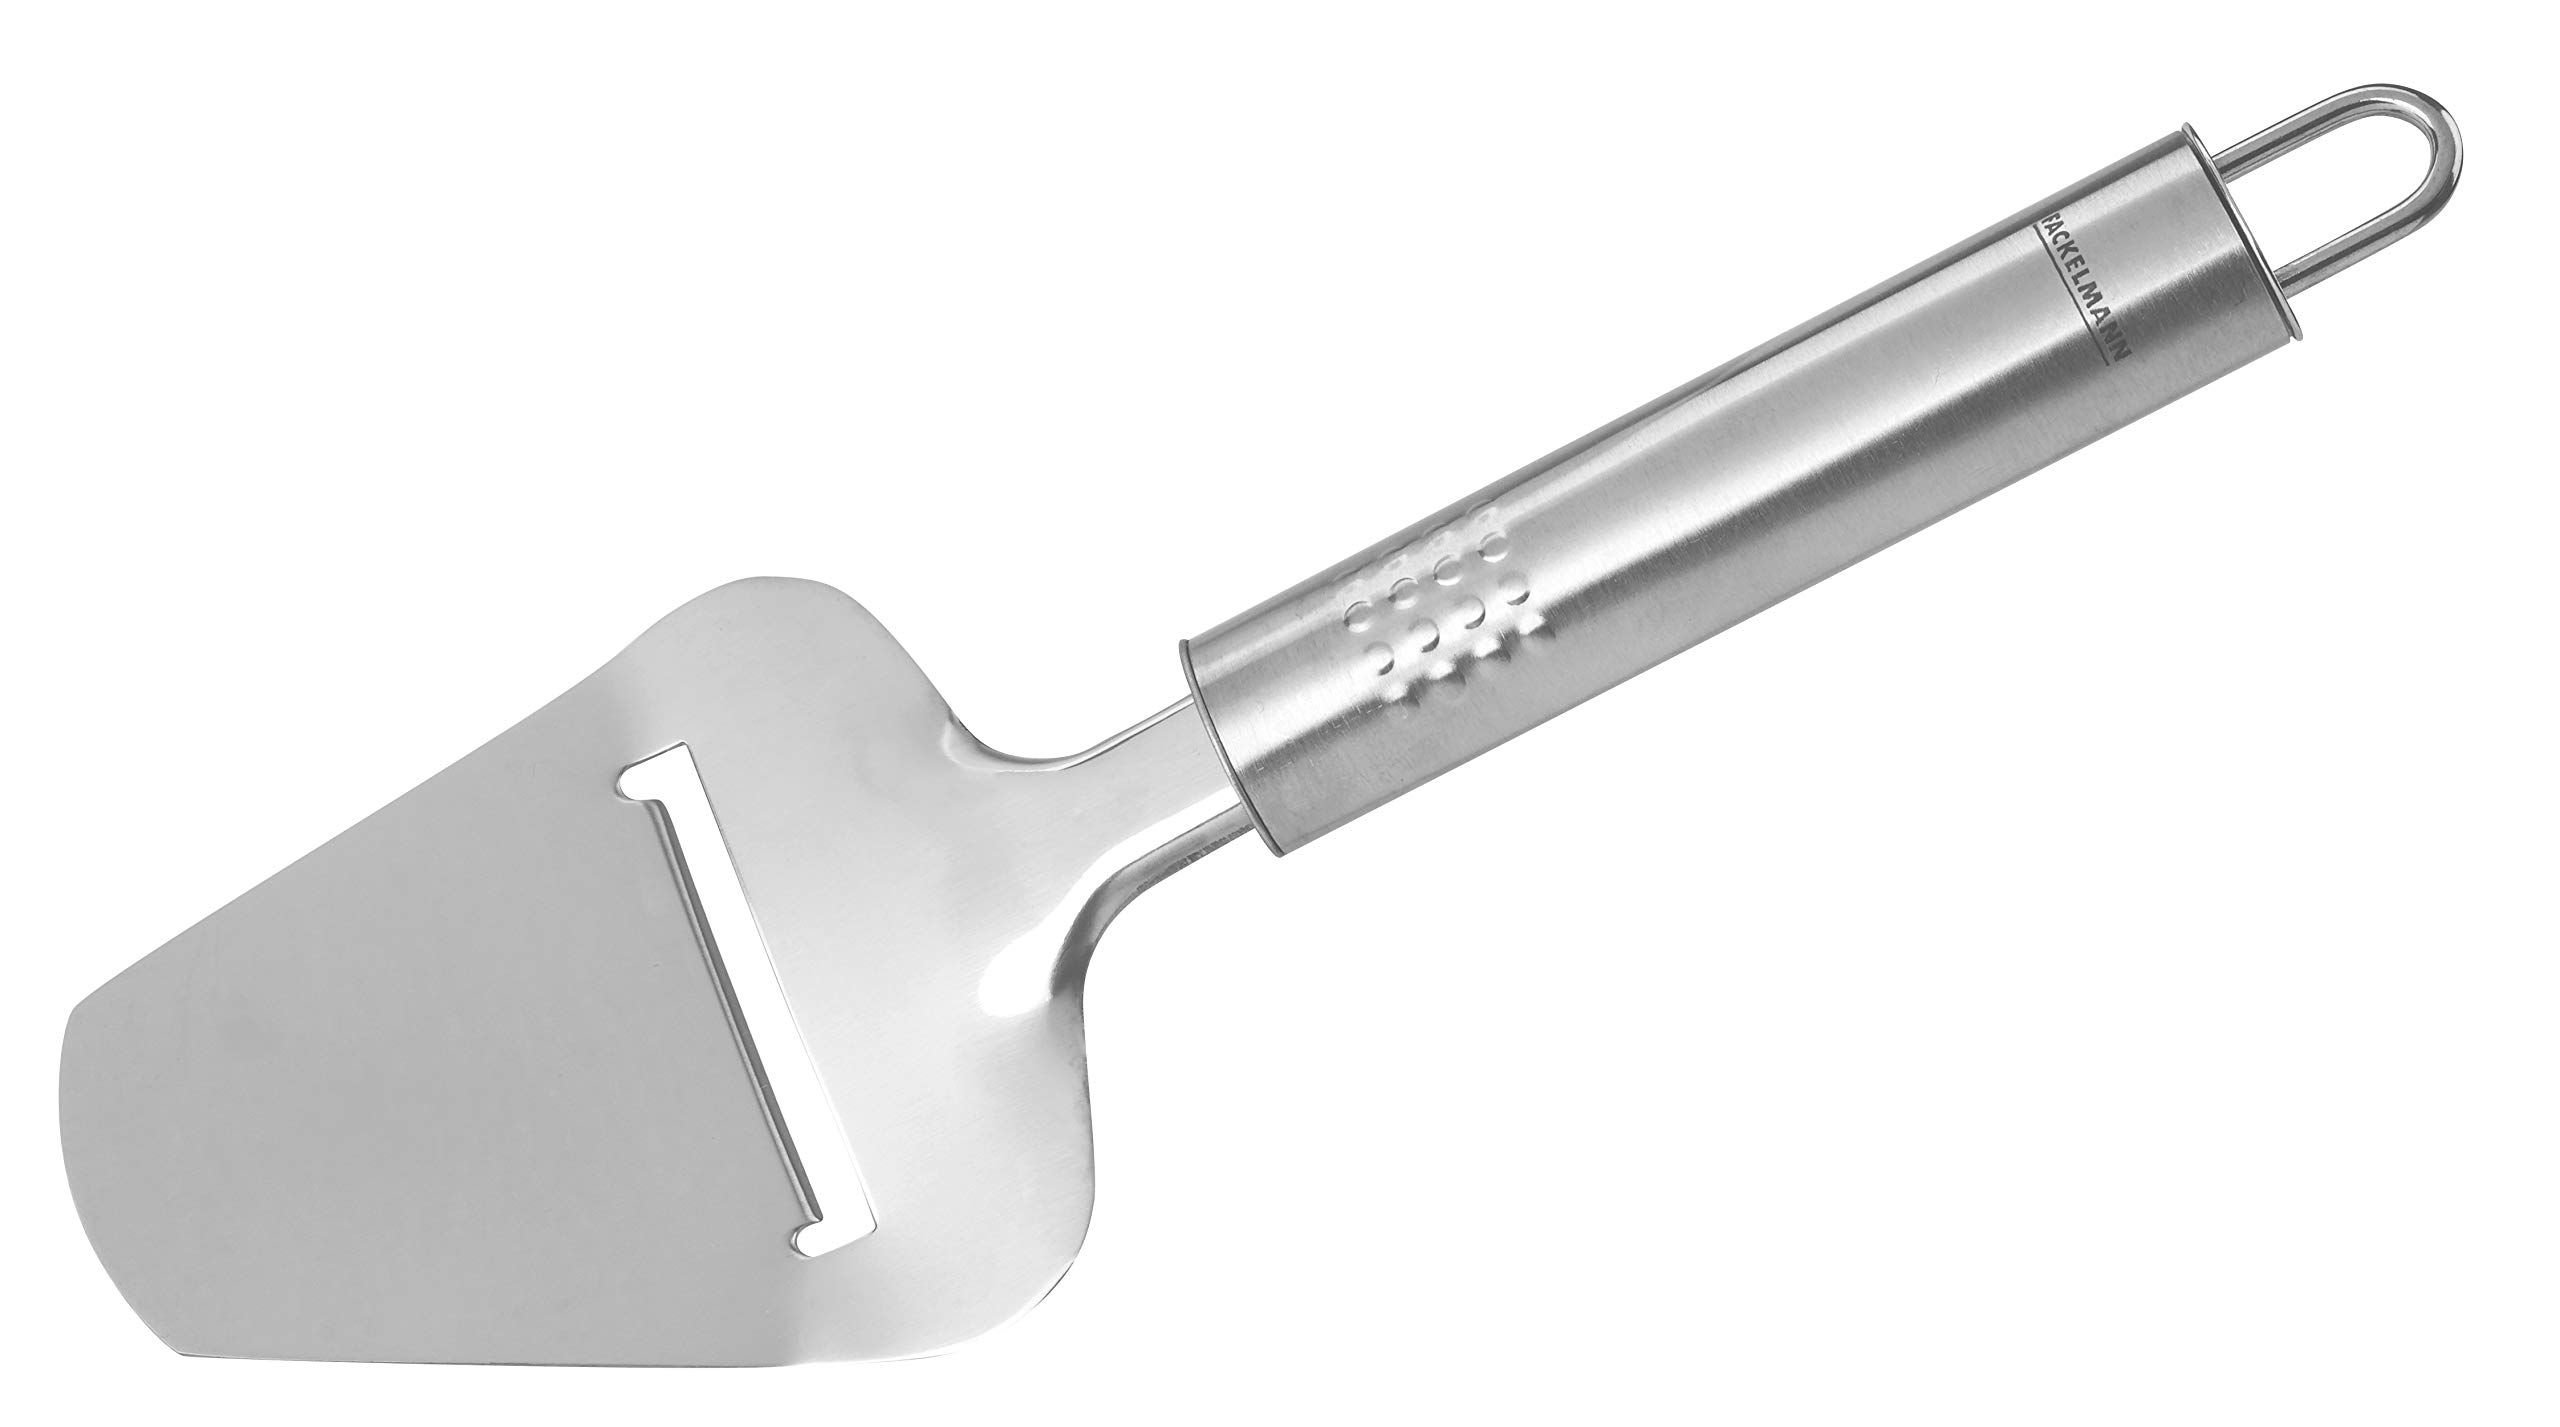 Нож-лопатка для сыра